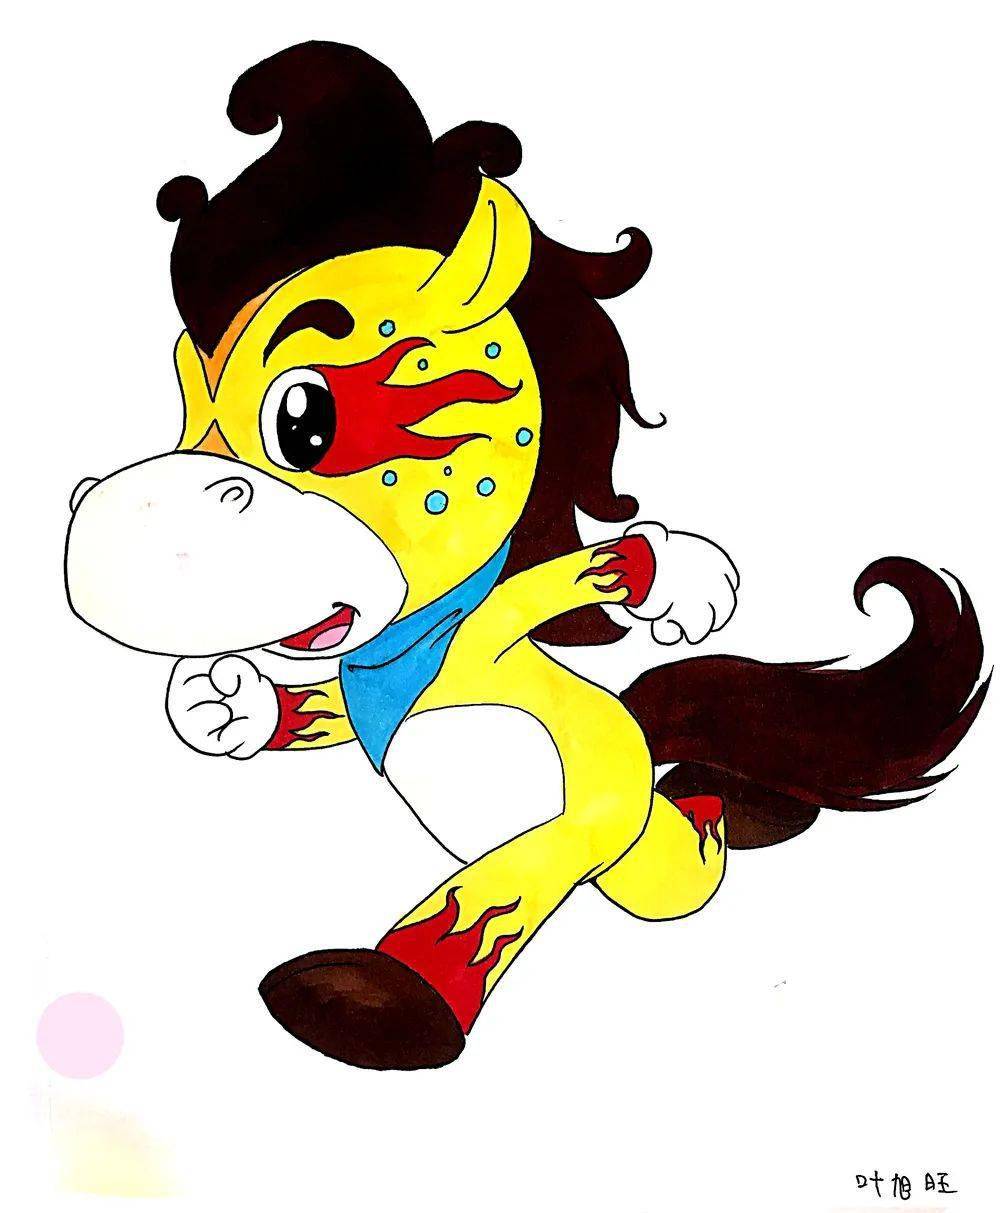 设计说明吉祥物原形是马,采用红黄蓝三原色的色彩搭配